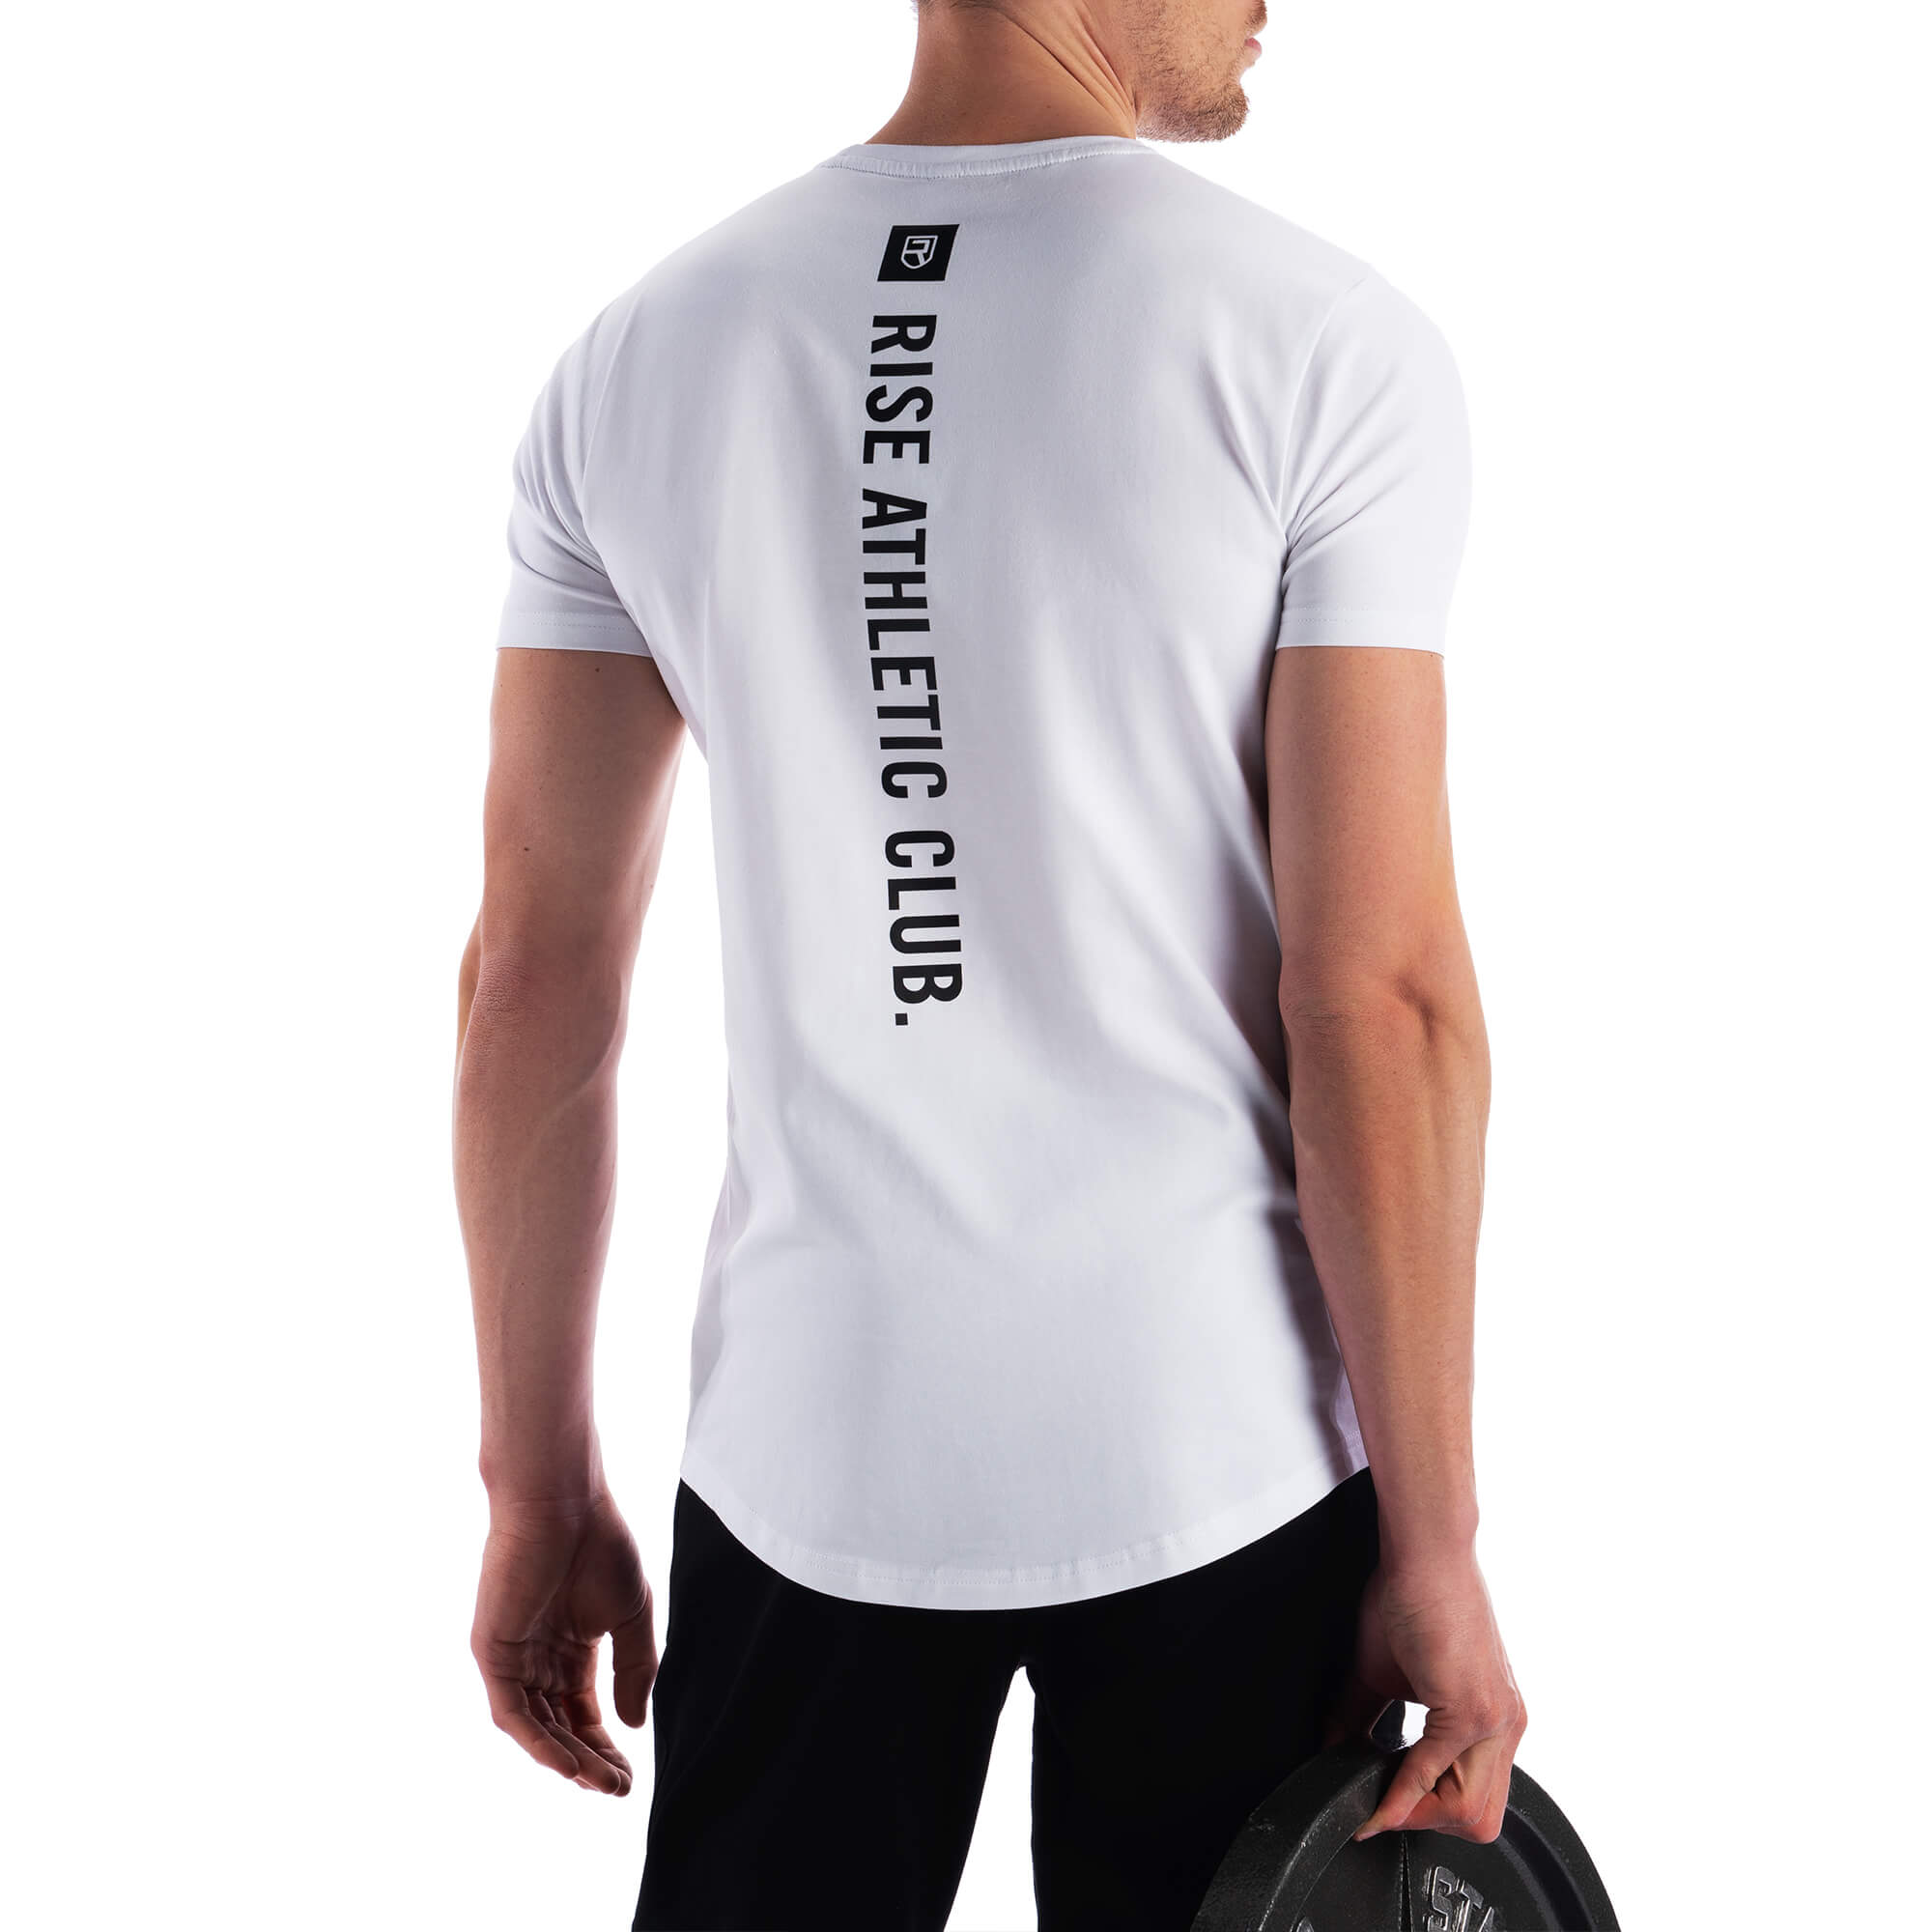 Athletic Club T-Shirt - White